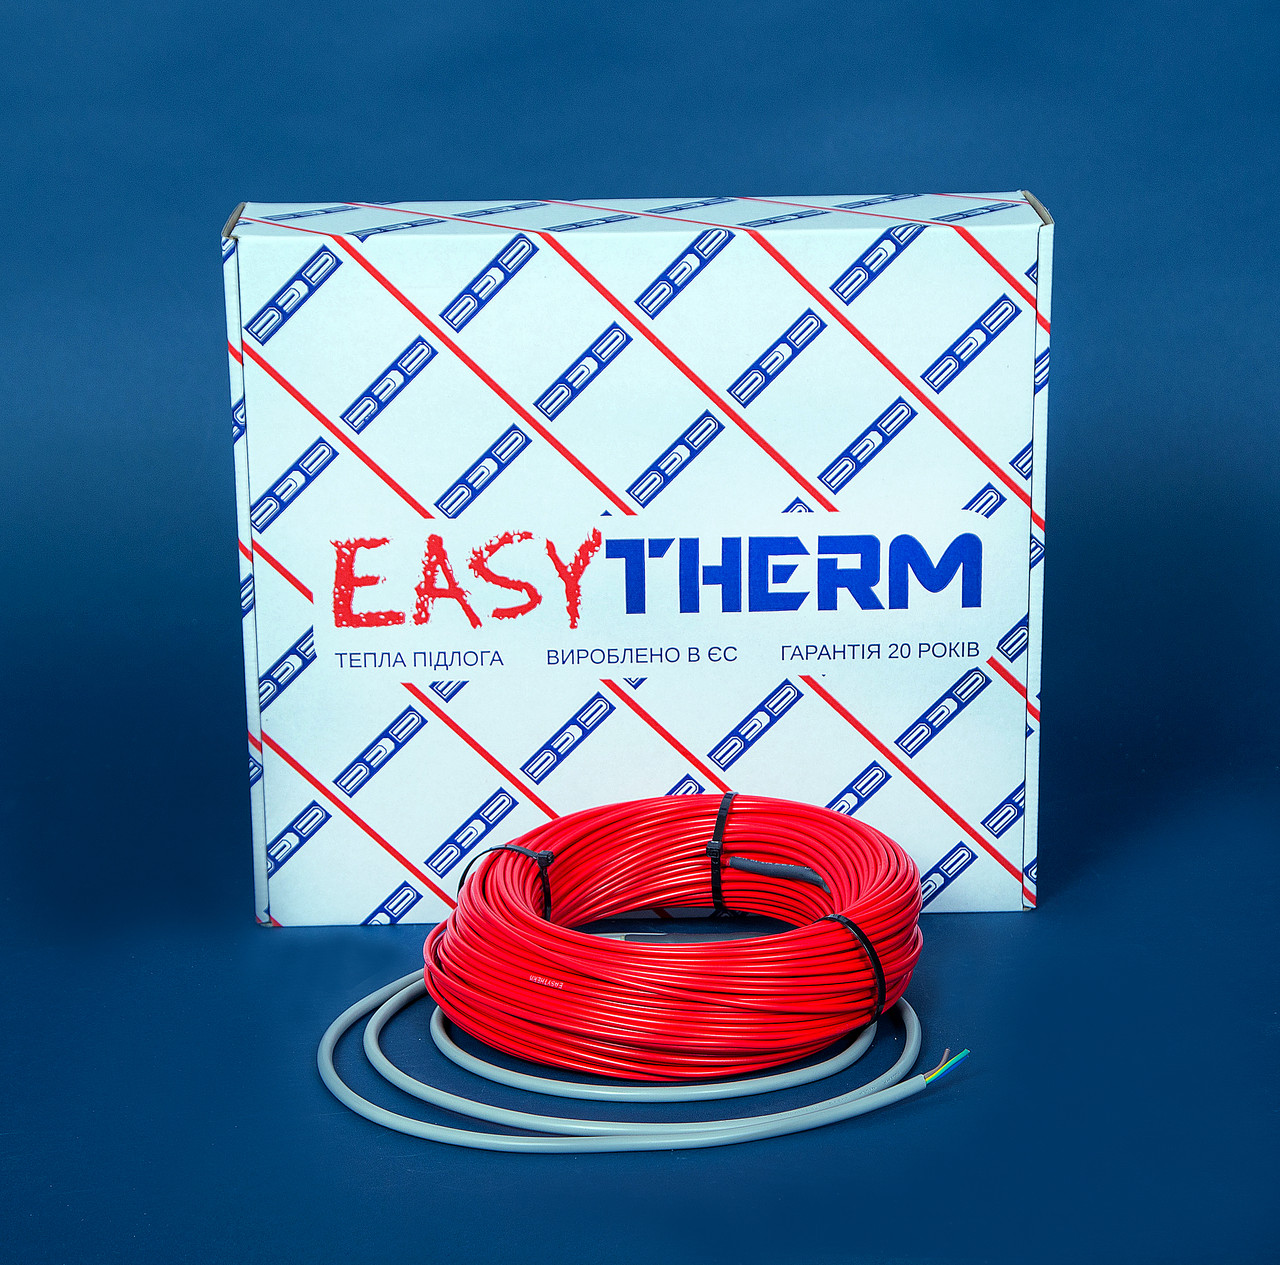 Электрический теплый пол EasyTherm Easycable 105.0 отзывы - изображения 5